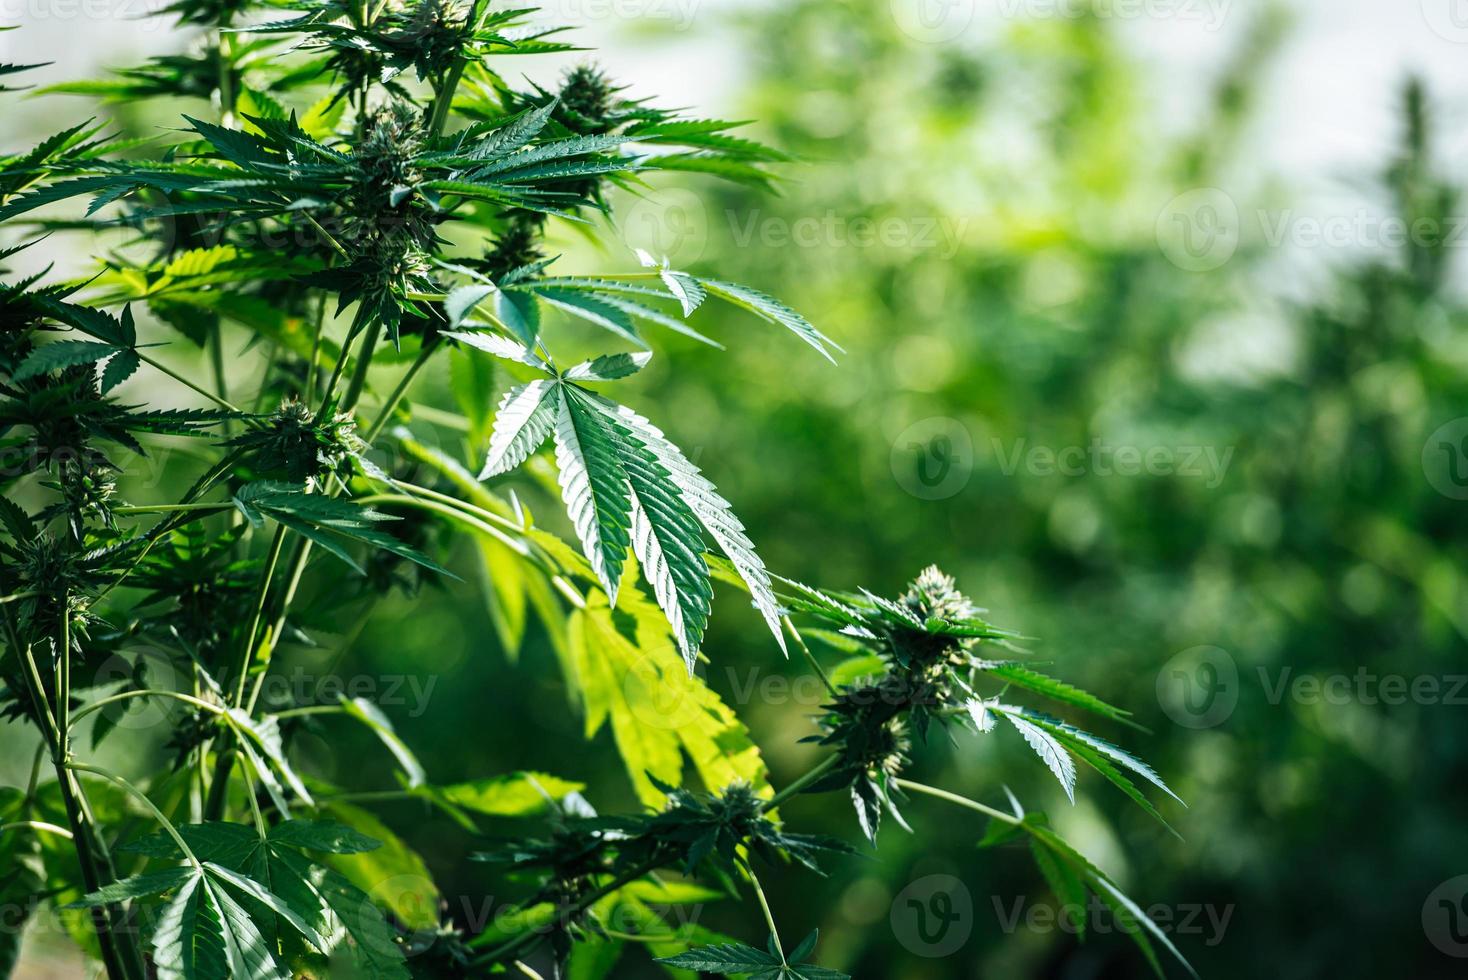 hierba de fondo de cannabis orgánico en la granja. hojas de cannabis de una planta, granja de cannabis. concepto de negocio de cannabis y medicina alternativa. foto